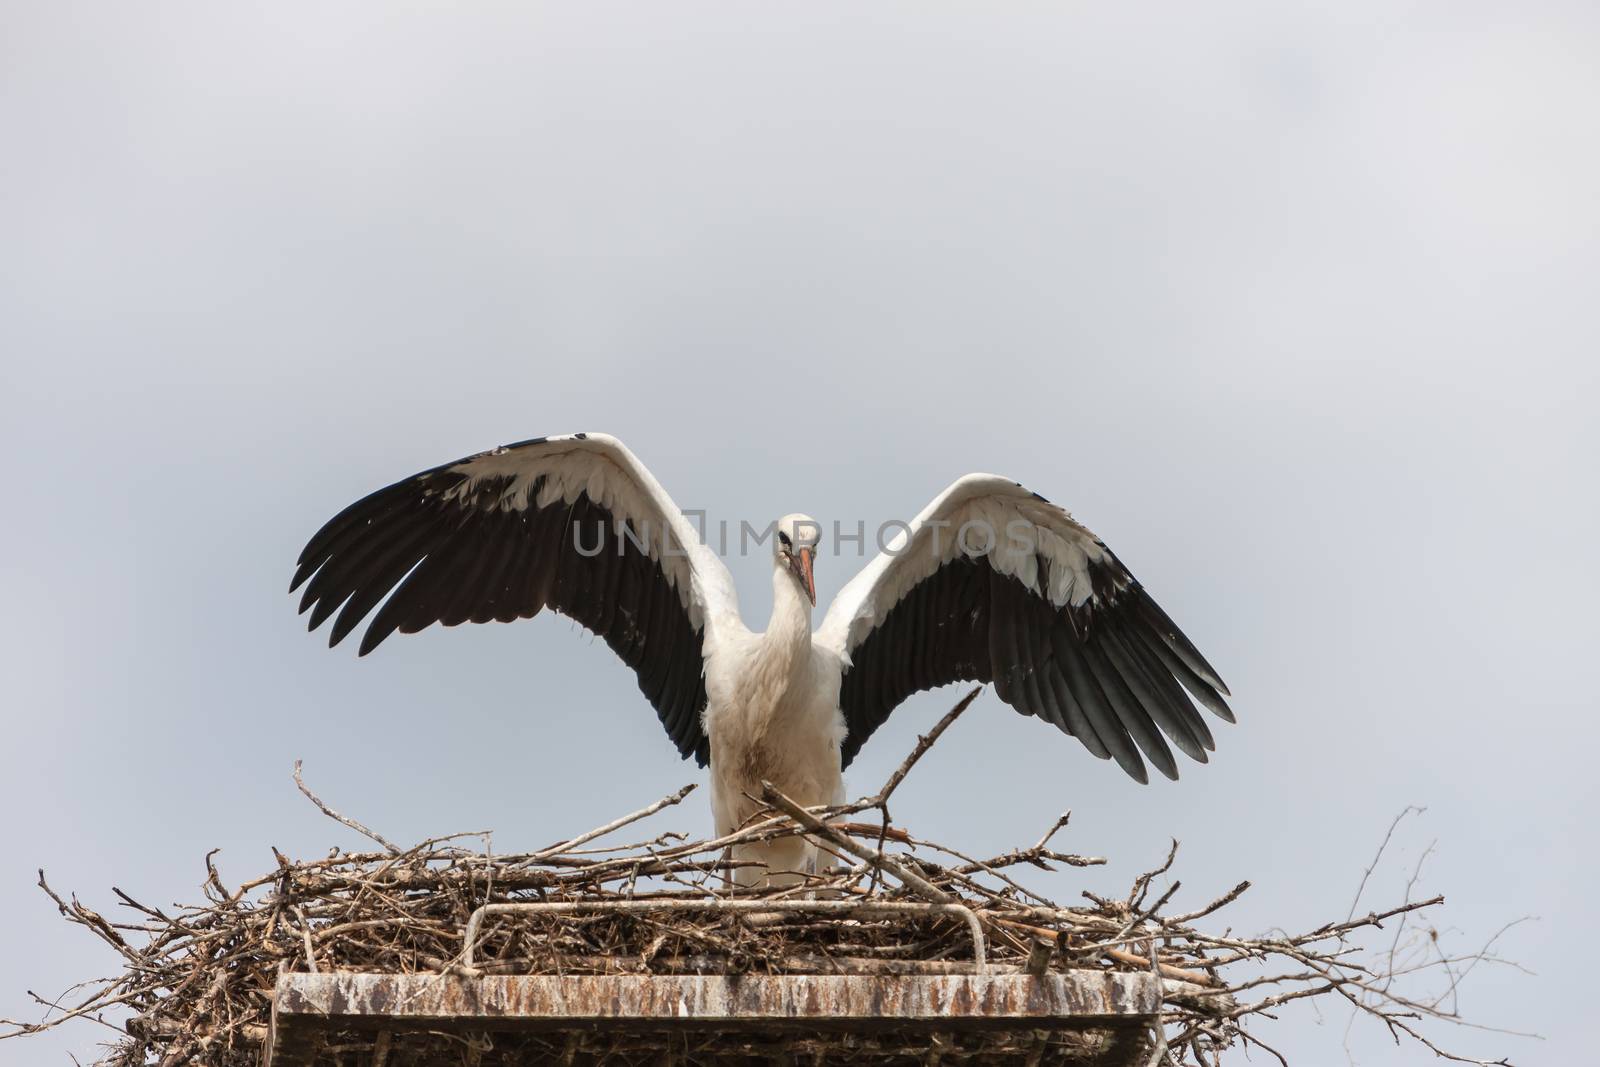 White stork in the nest against the blue sky